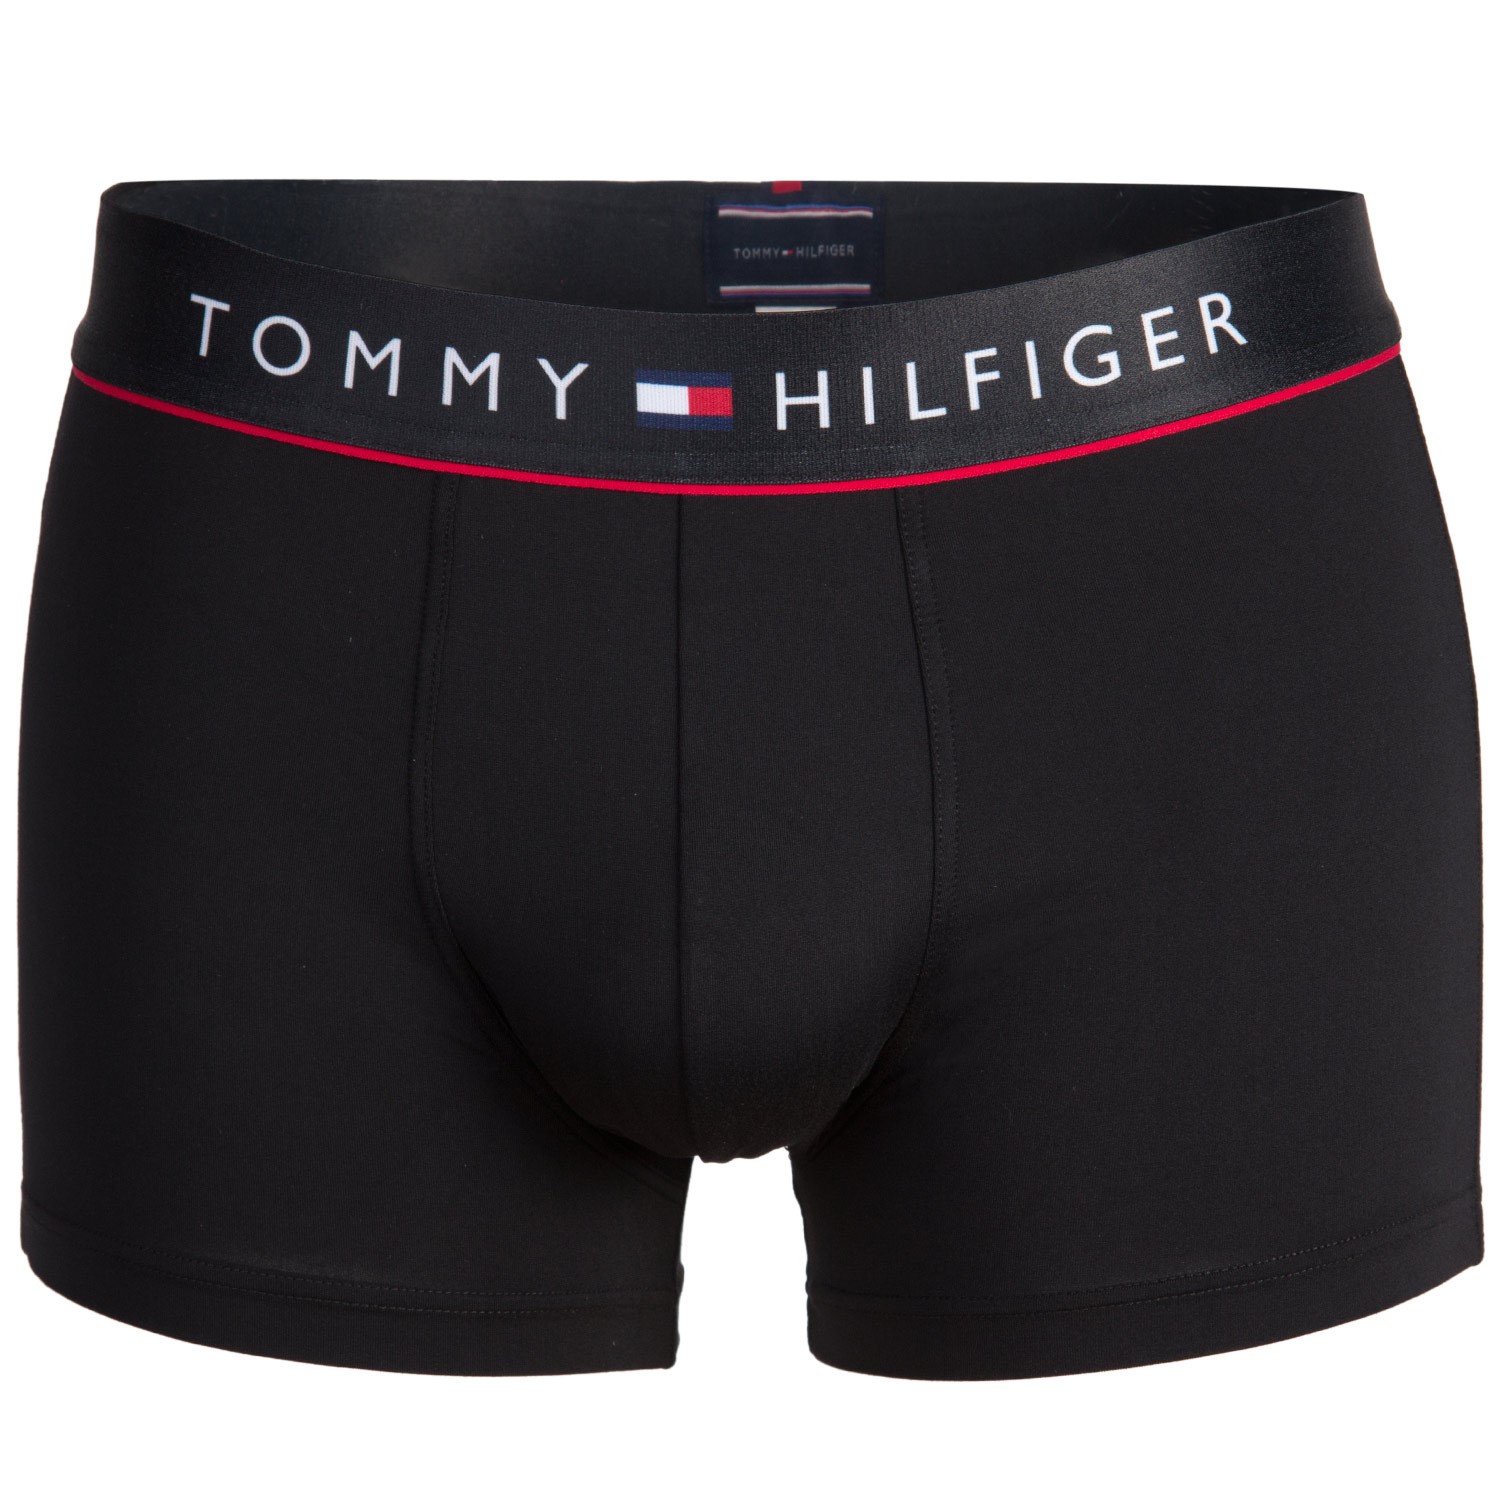 Tommy Hilfiger Flex Trunk - Bokser Underbukser - Undertøj - Timarco.dk